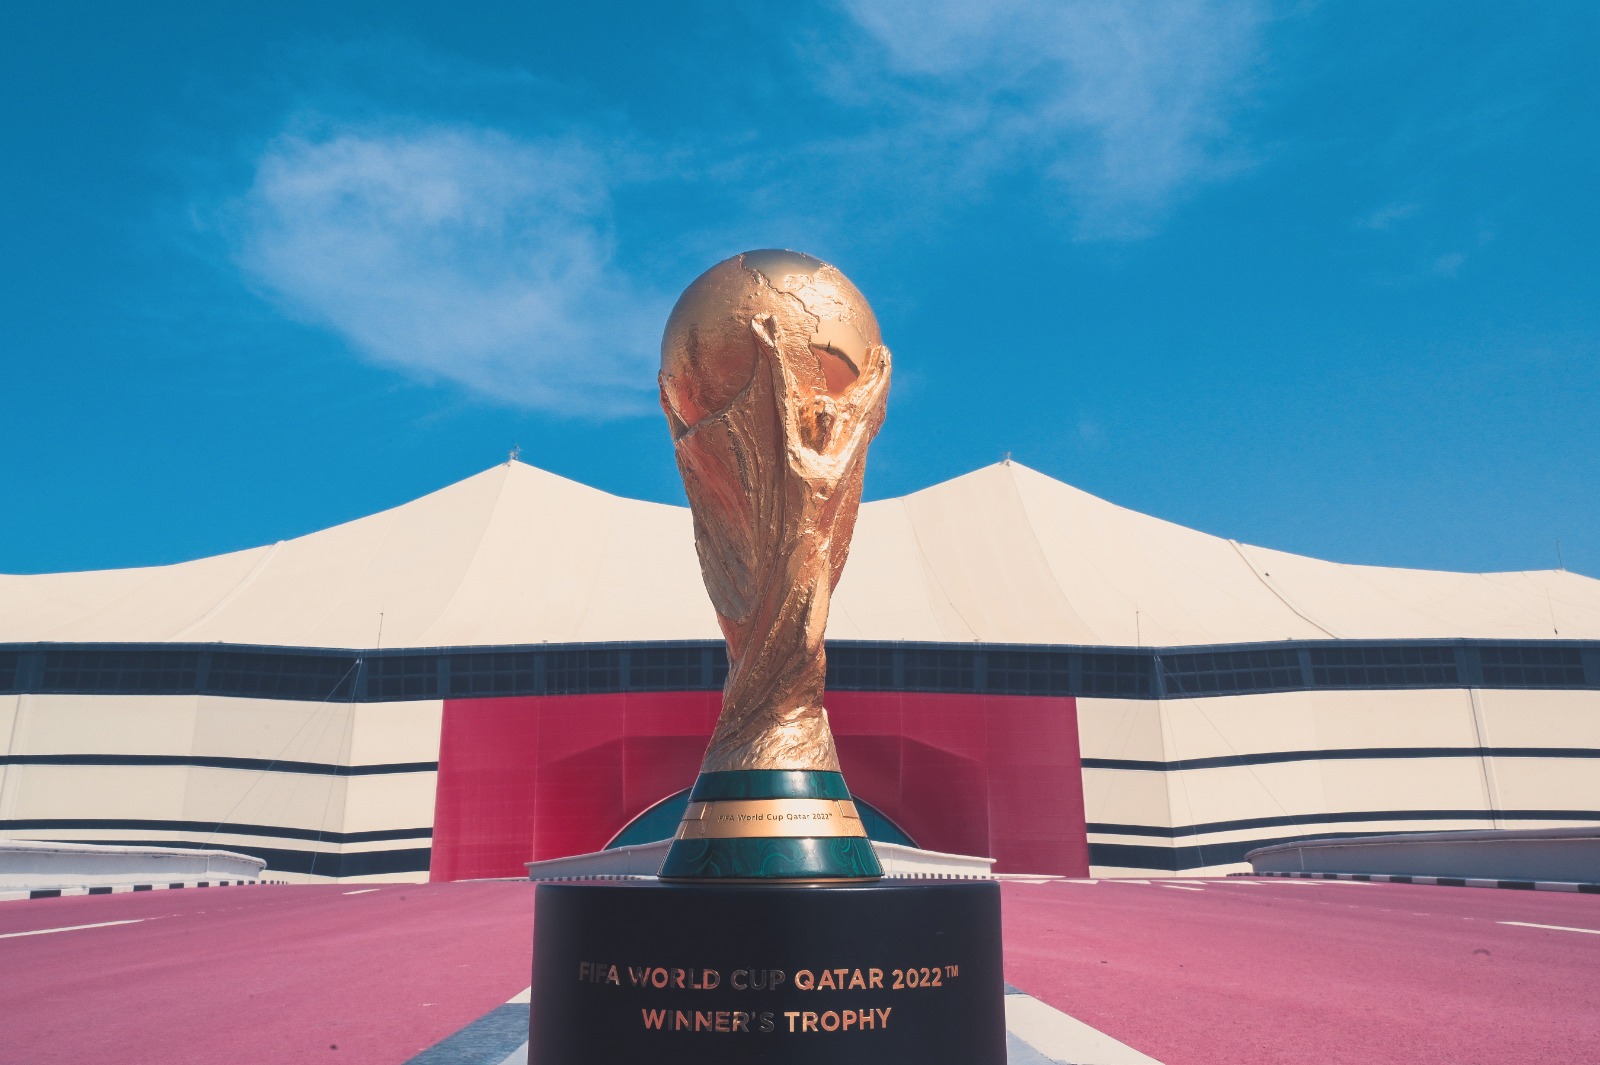 صورة متى موعد بيع تذاكر كأس العالم 2022